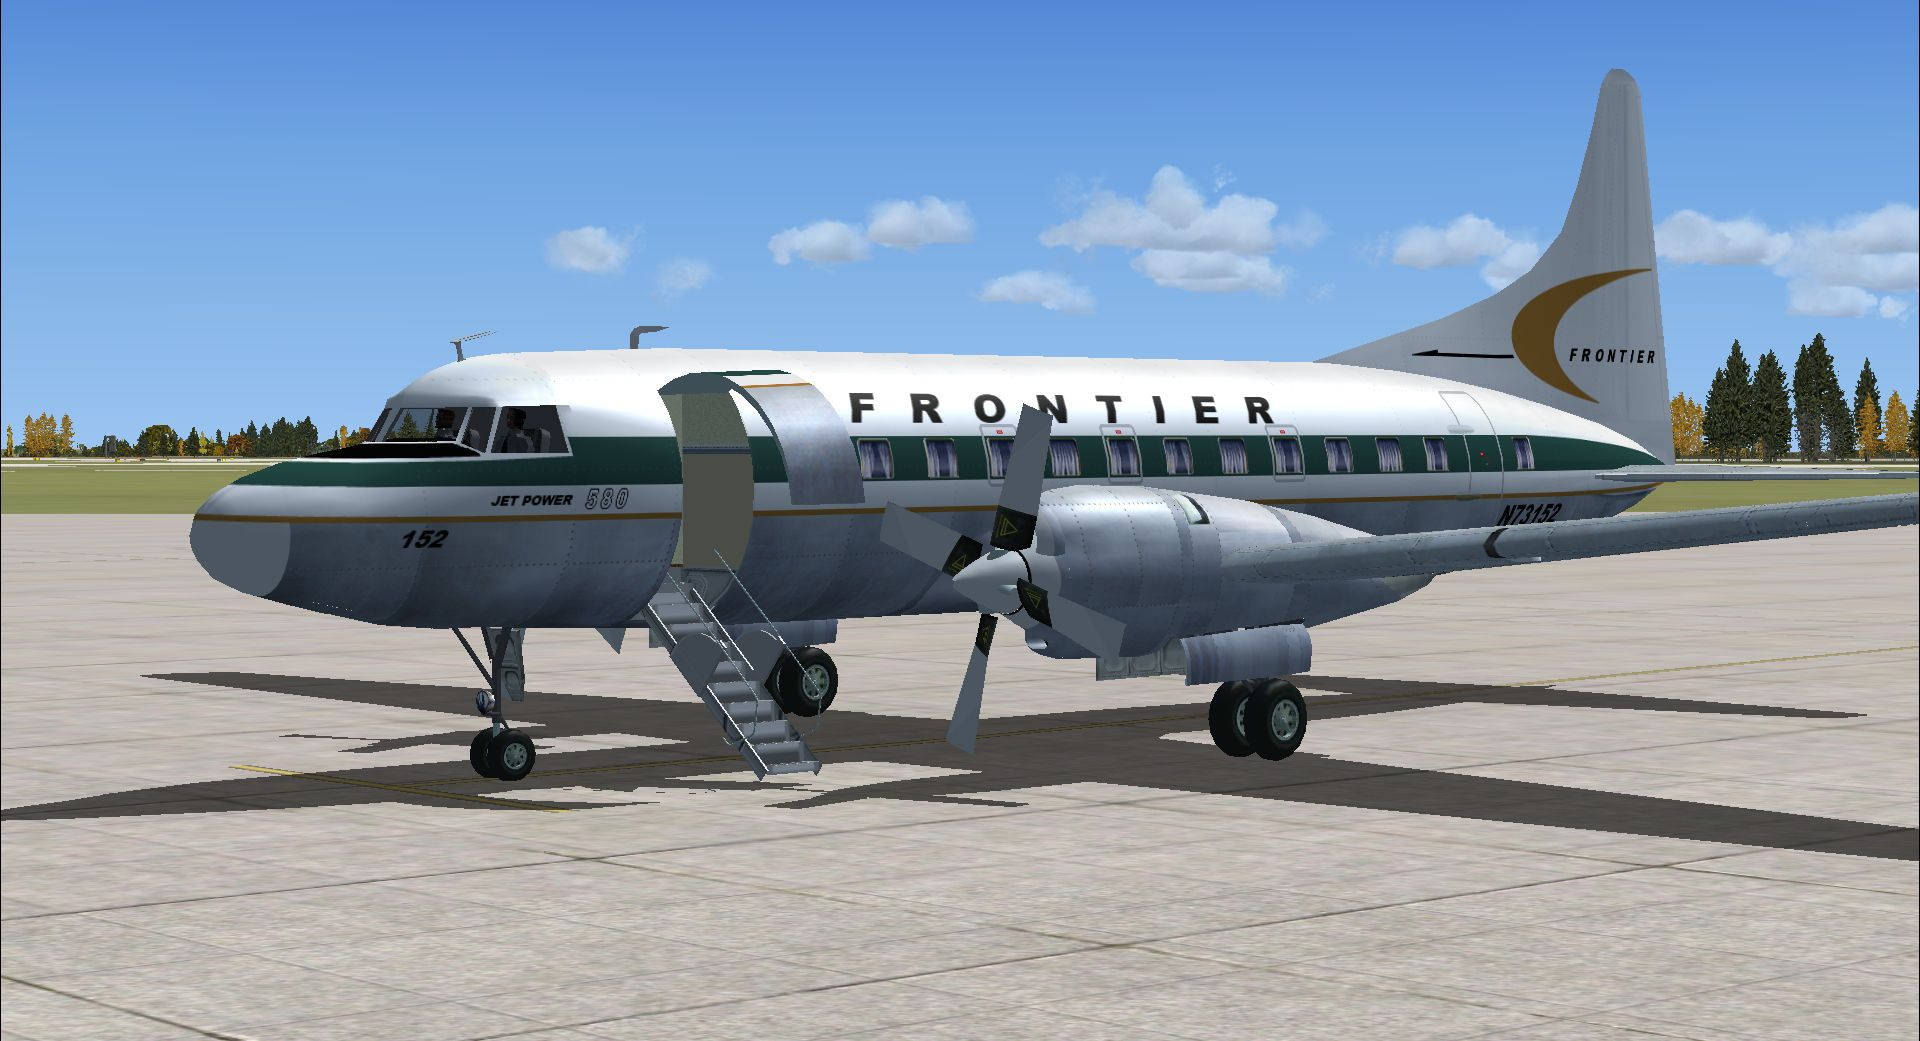 Väntarpå Frontier Airlines. Wallpaper